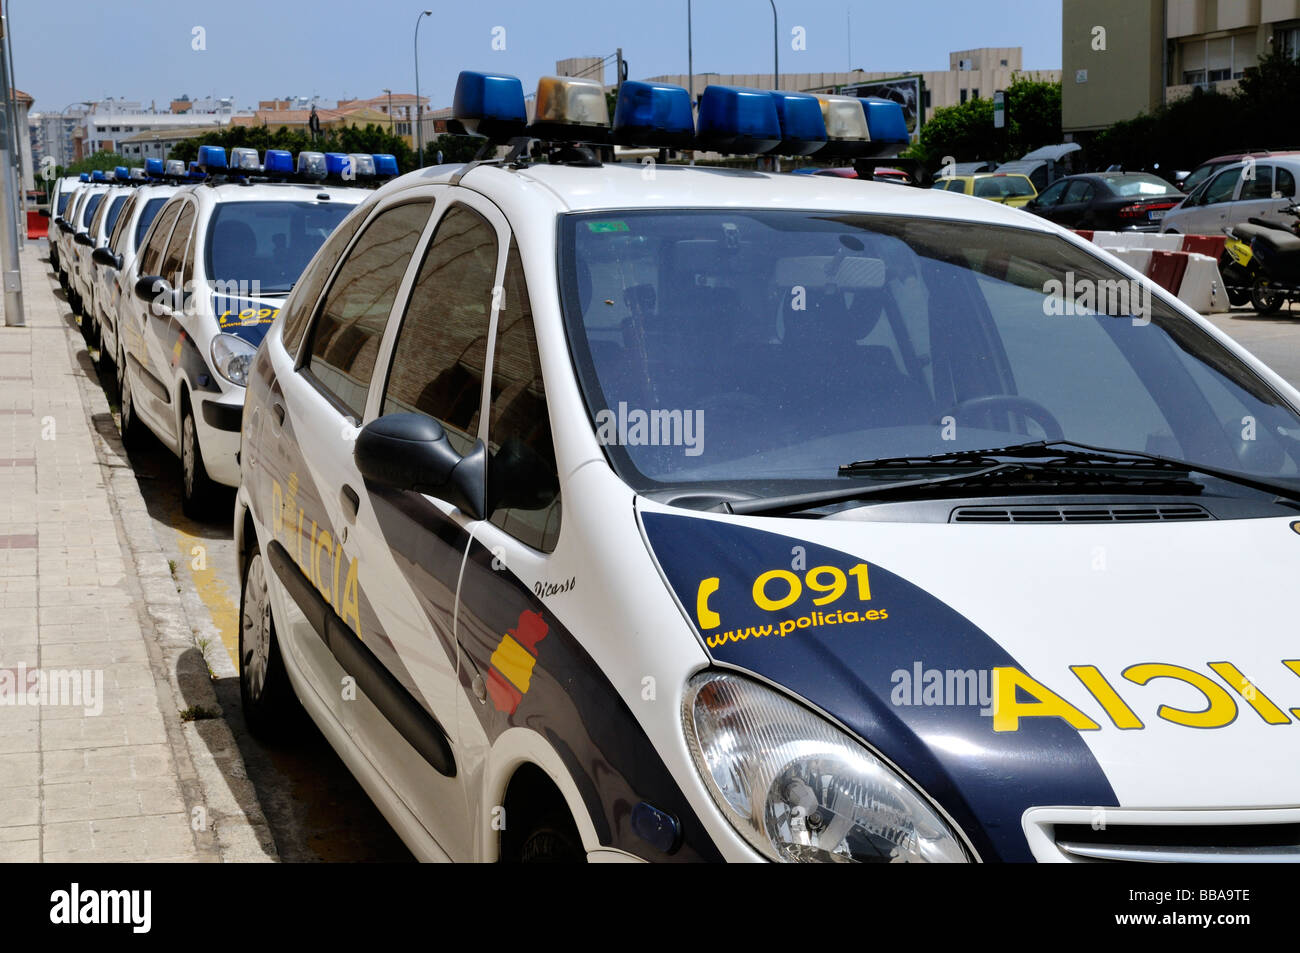 Rangée de voitures de police stationnées à Malaga, Espagne Banque D'Images